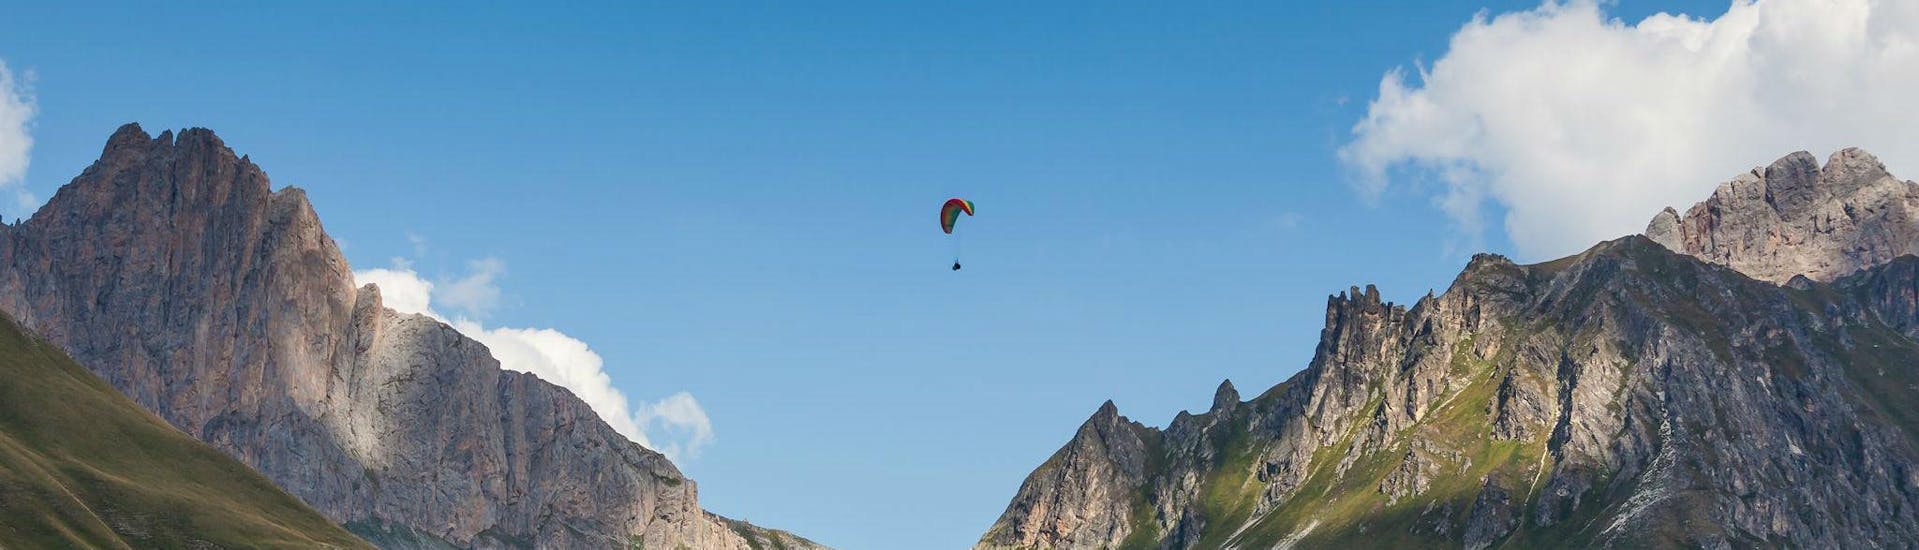 Volo acrobatico in parapendio biposto a Serre-Chevalier - Chantemerle (da 7 anni) - Col du Granon.